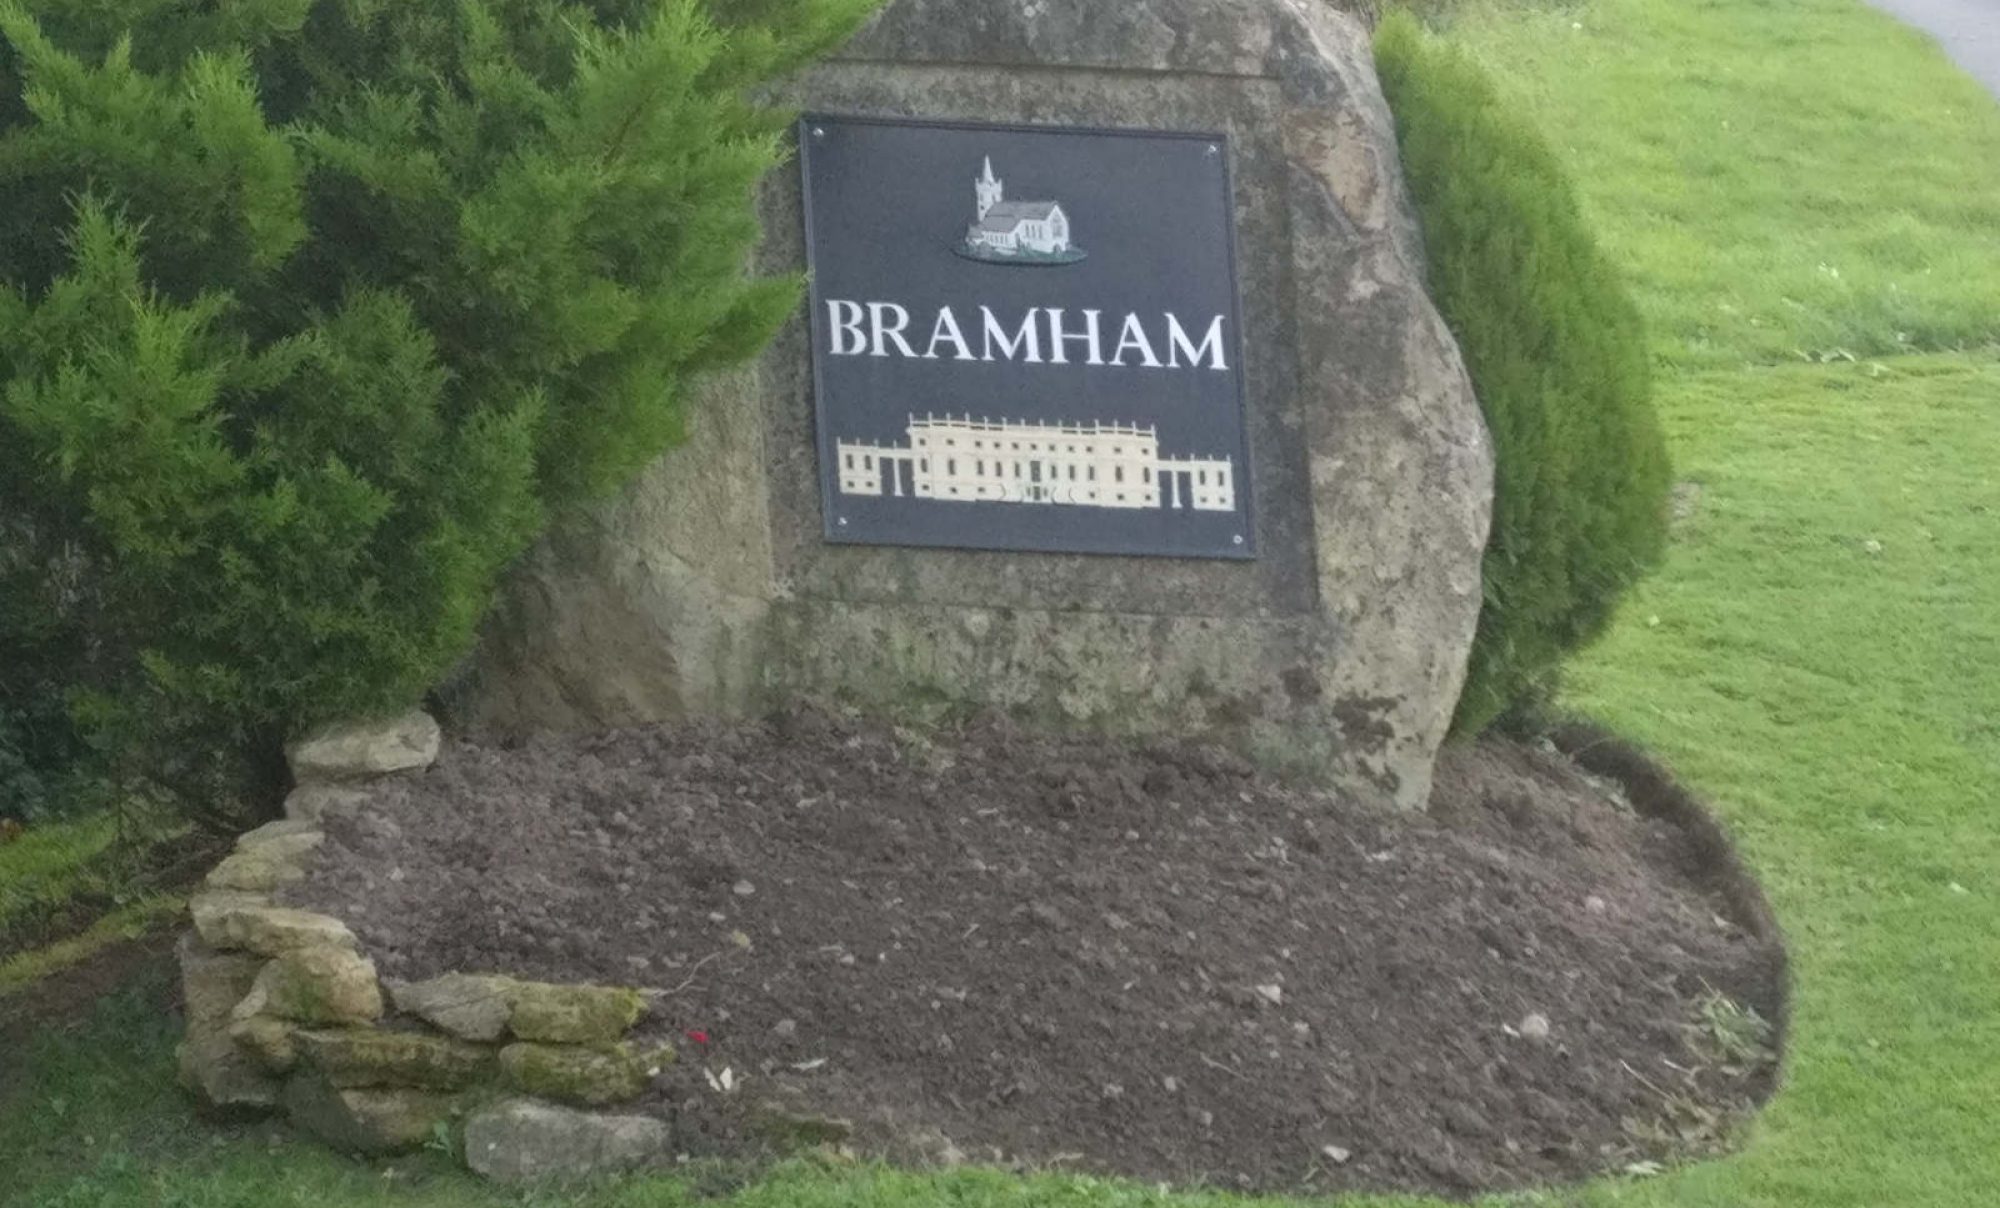 Bramham village